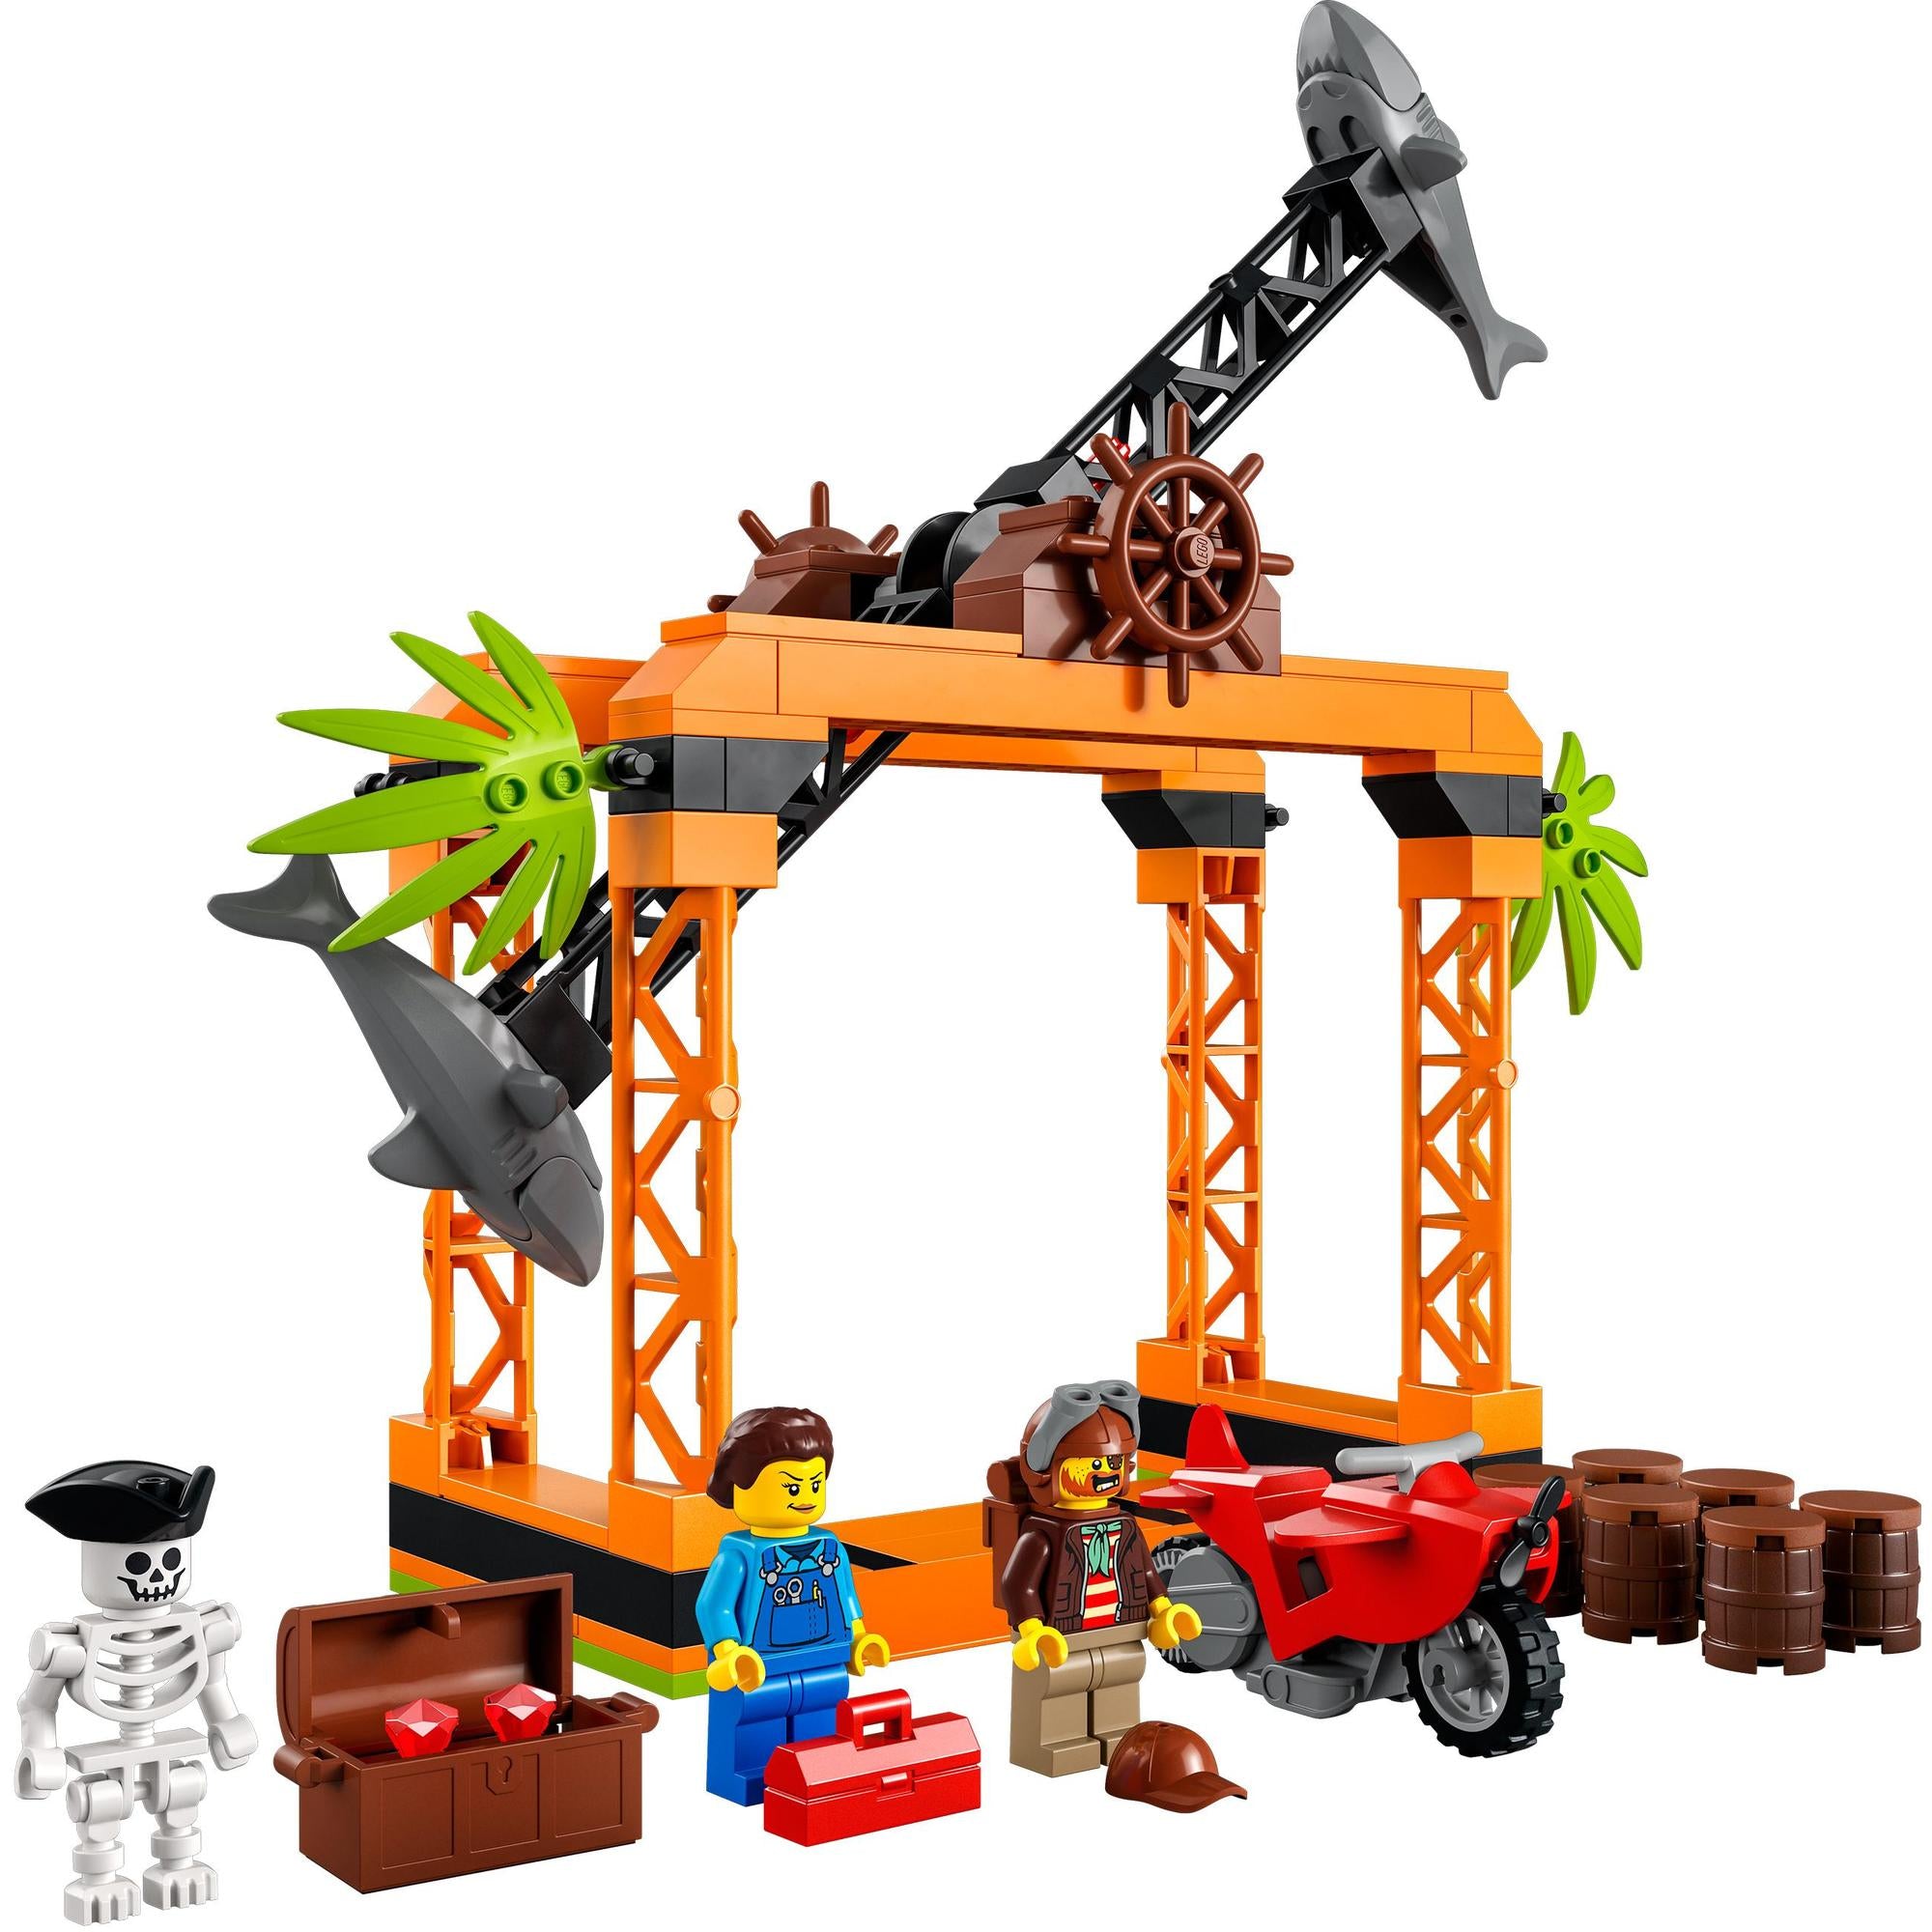 LEGO® | 60342 | Haiangriff-Stuntchallenge